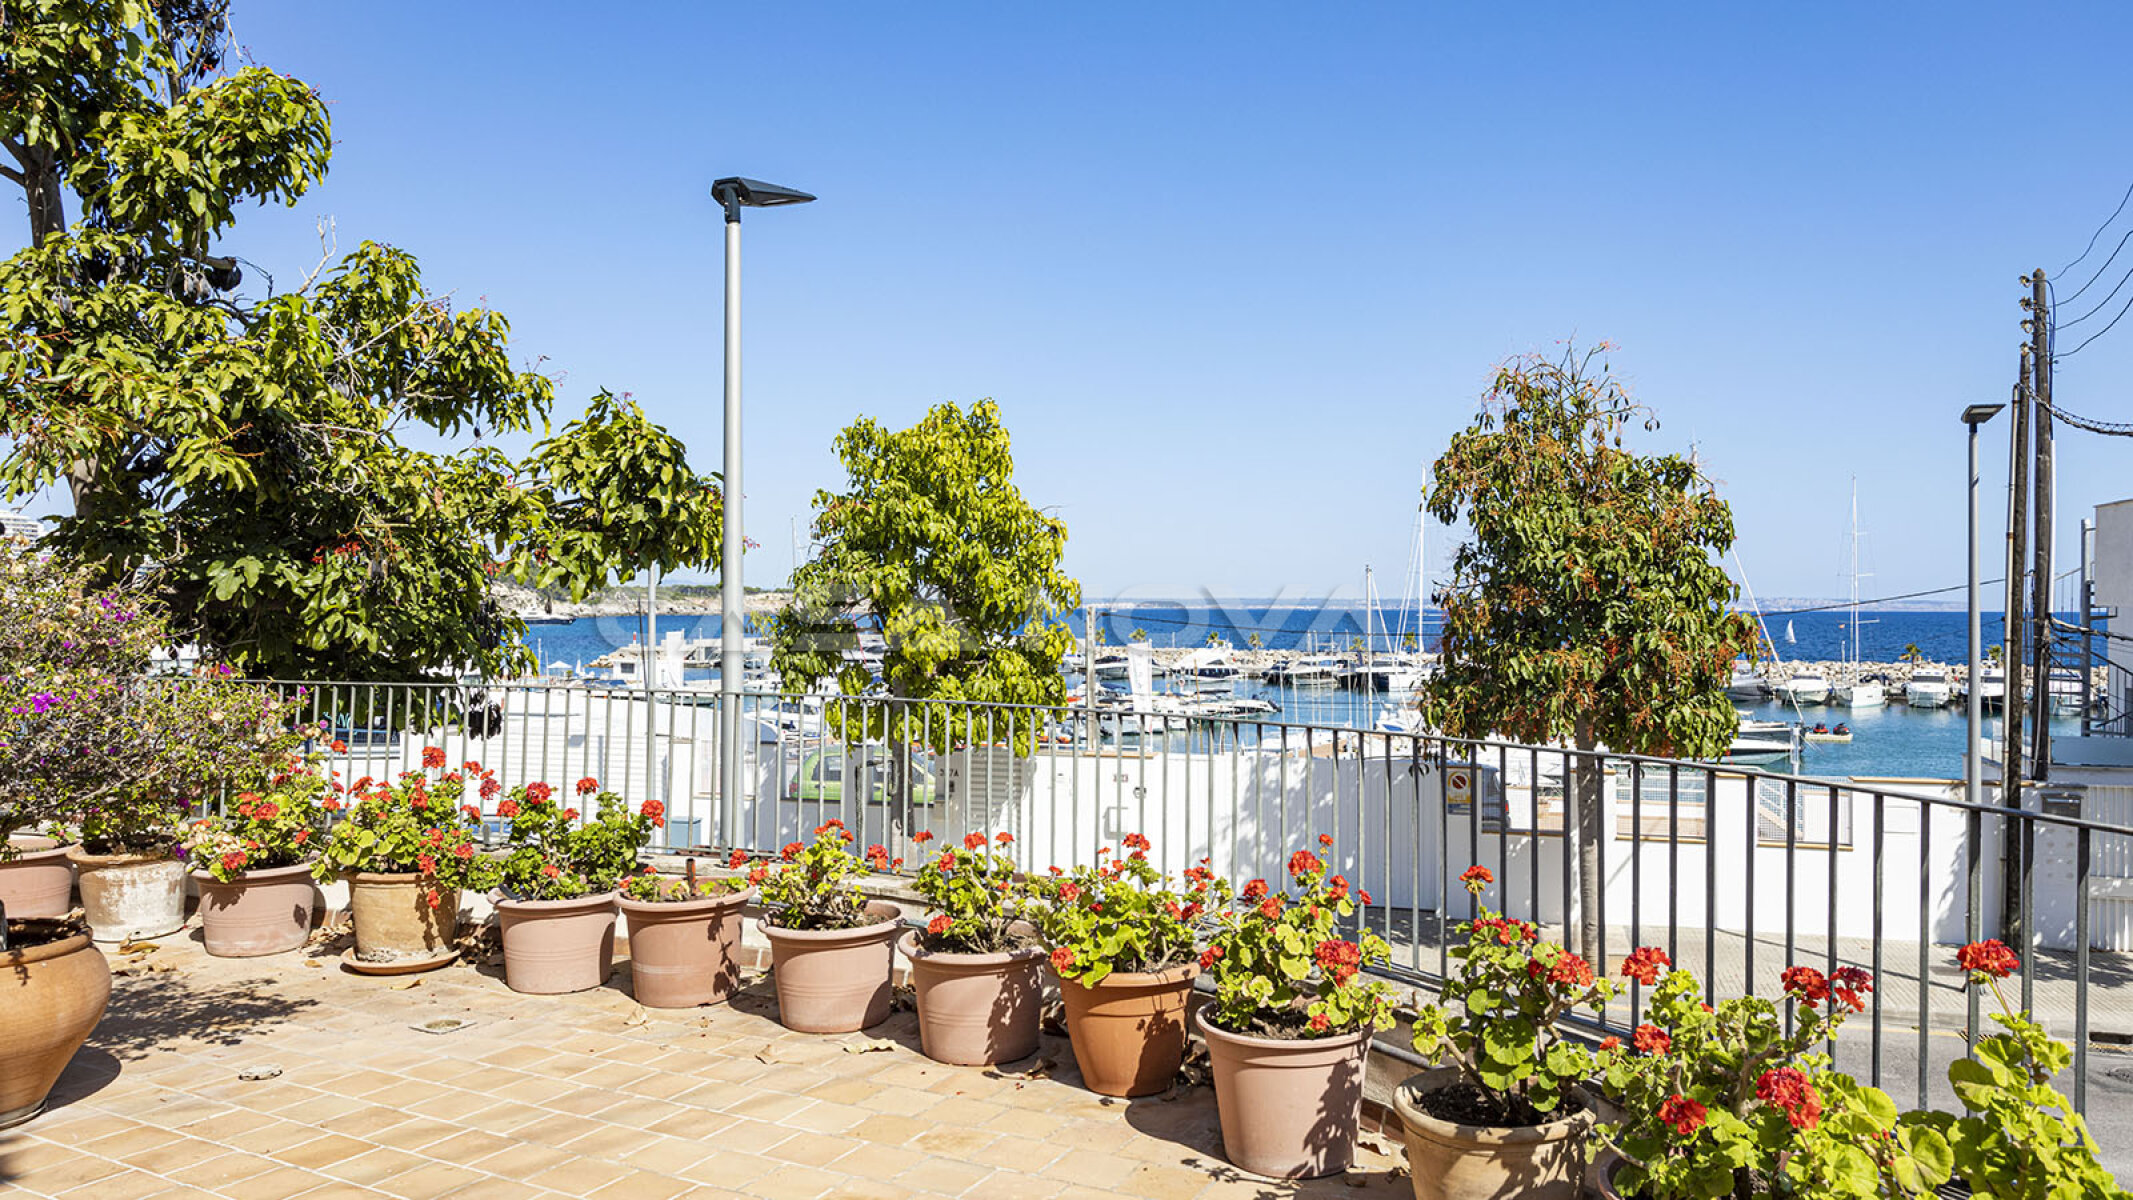 Terraza mediterr�nea con vista al puerto deportivo